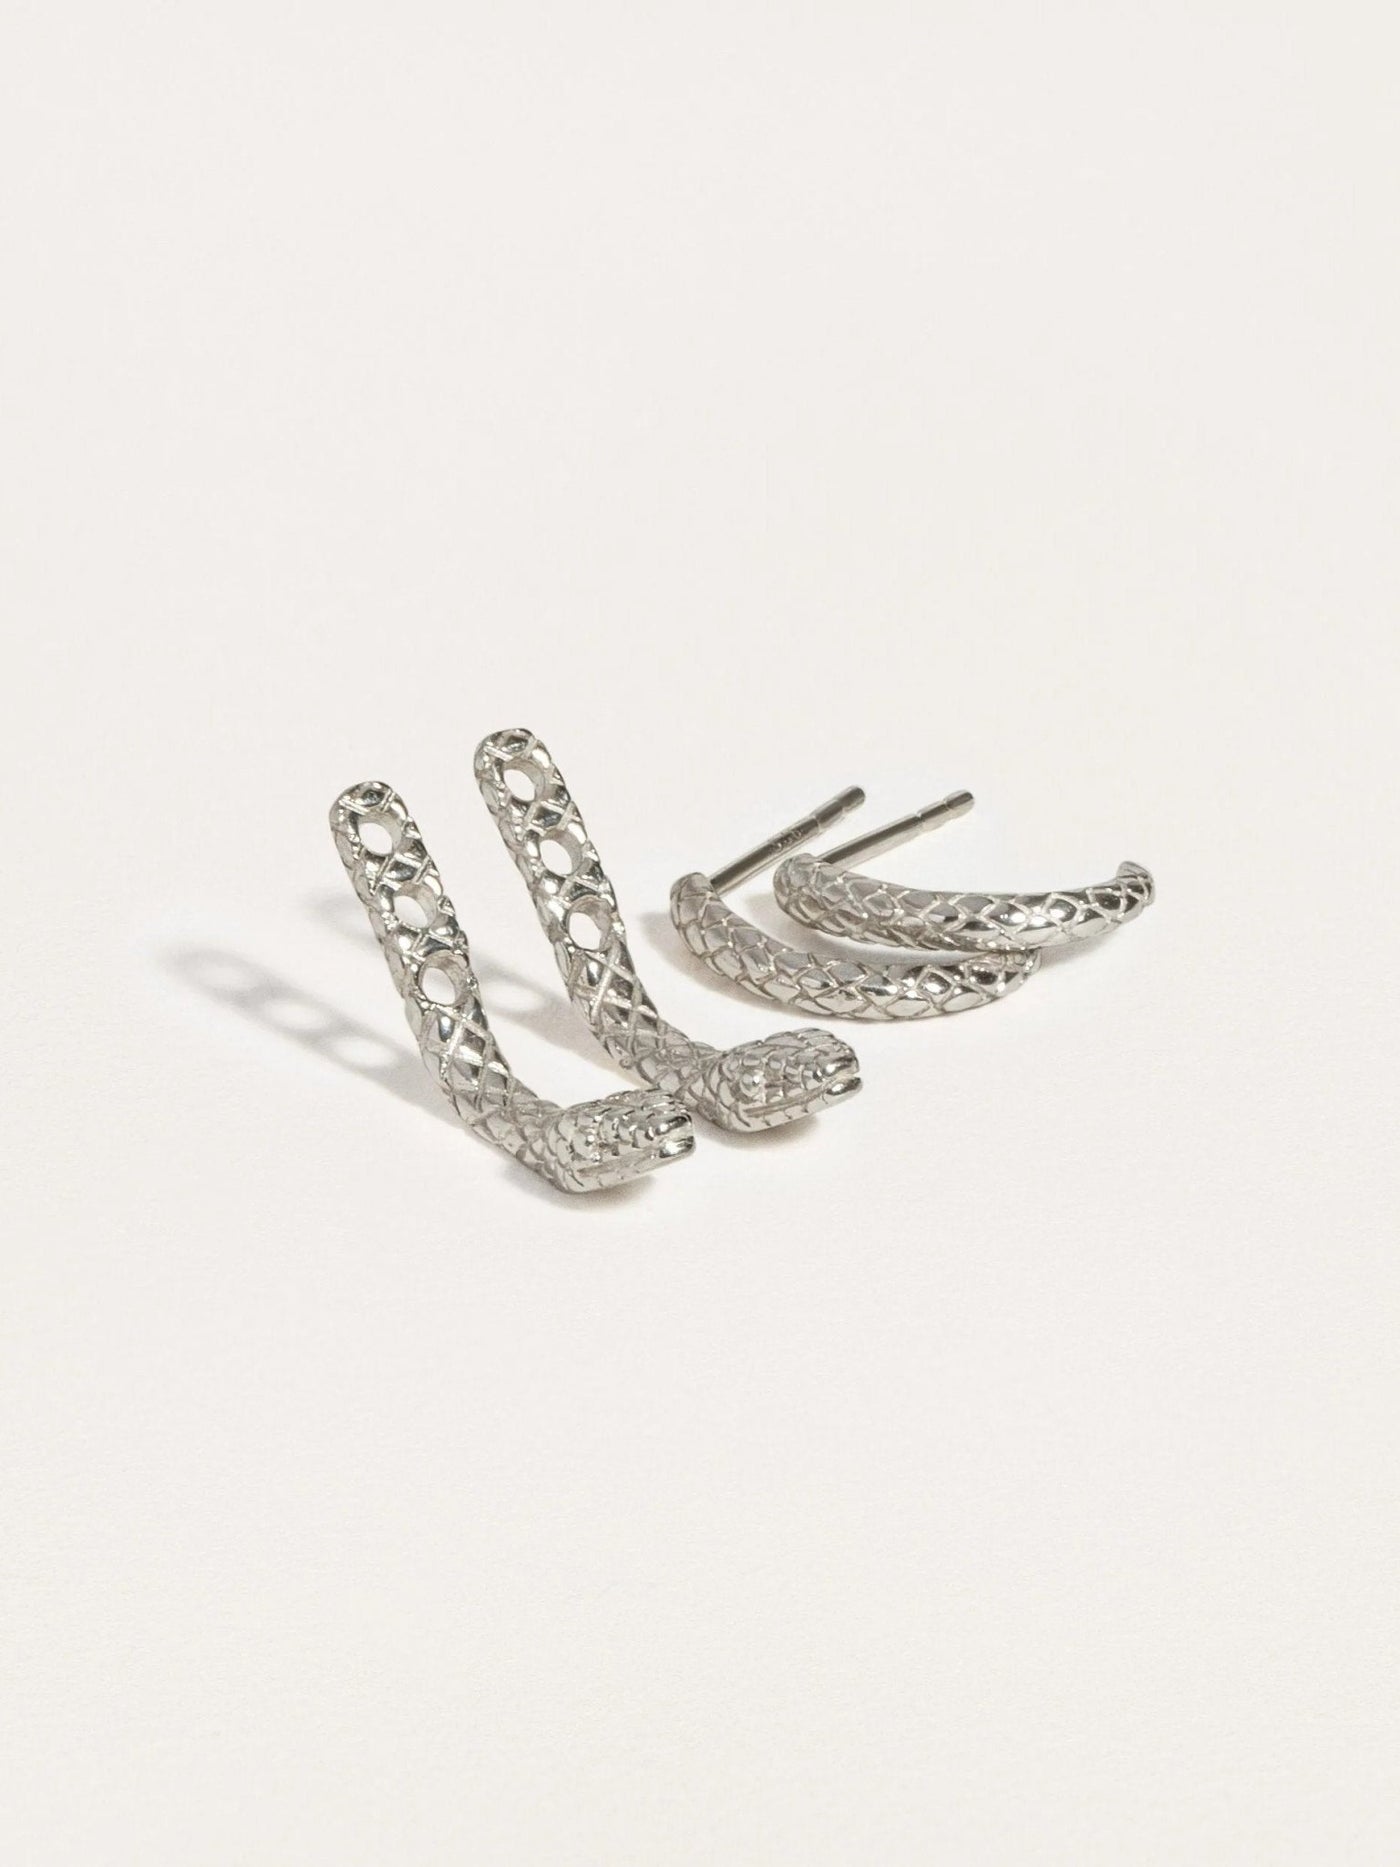 Snake Earrings Sterling Silver Jacket - PairSt Silver OxidizedAnimal EarringsEar JacketsLunai Jewelry